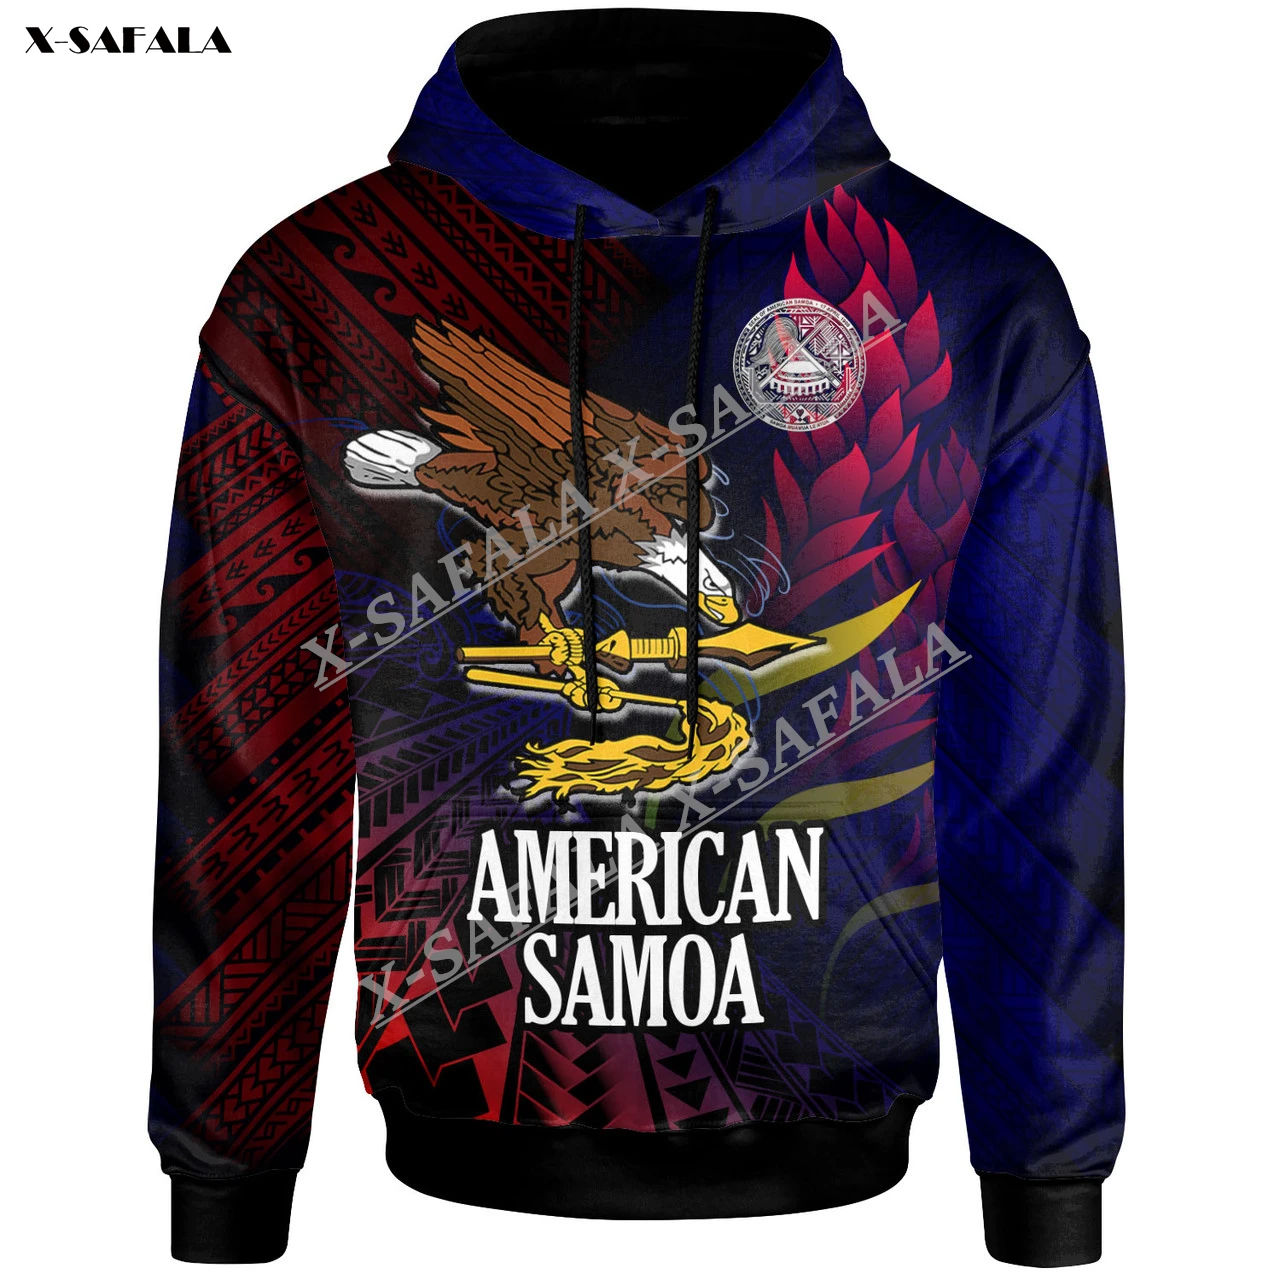 Печать Американского Самоа, Градиентный Орел, 3D принт, толстовка на молнии, Мужской пуловер, толстовка с капюшоном, Джерси, спортивный костюм, верхняя одежда, пальто Изображение 0